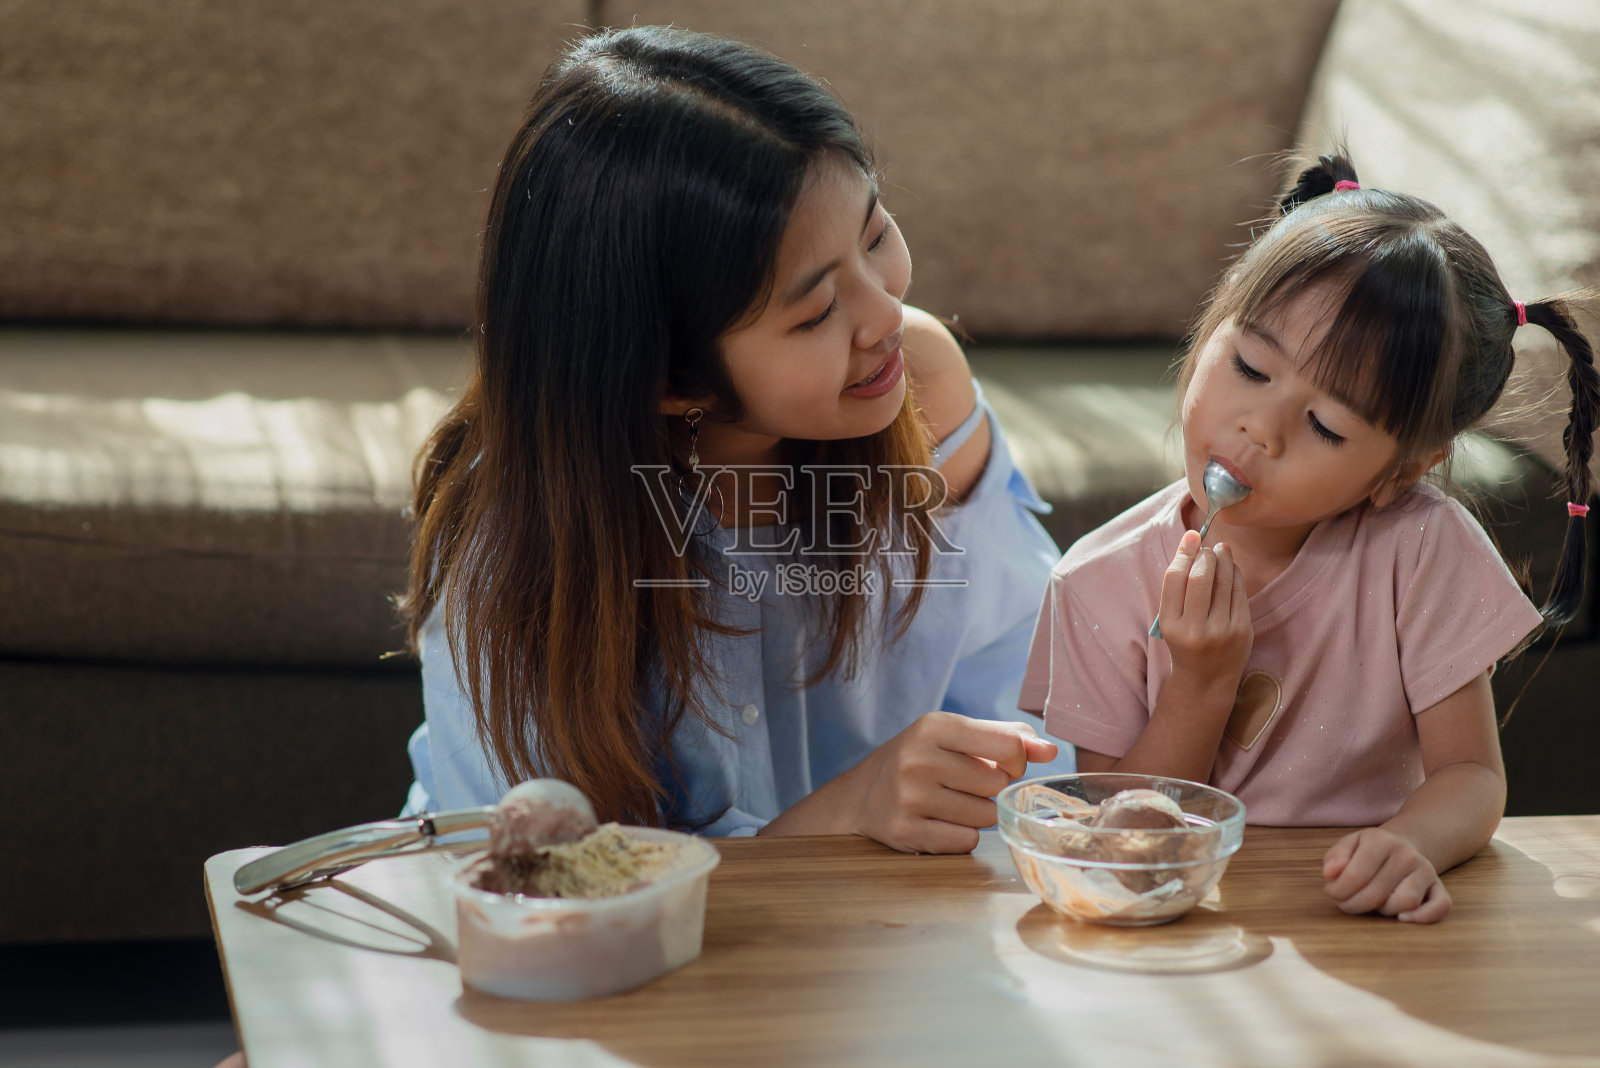 快乐的亚洲孩子喜欢和她的姐姐吃冰淇淋照片摄影图片